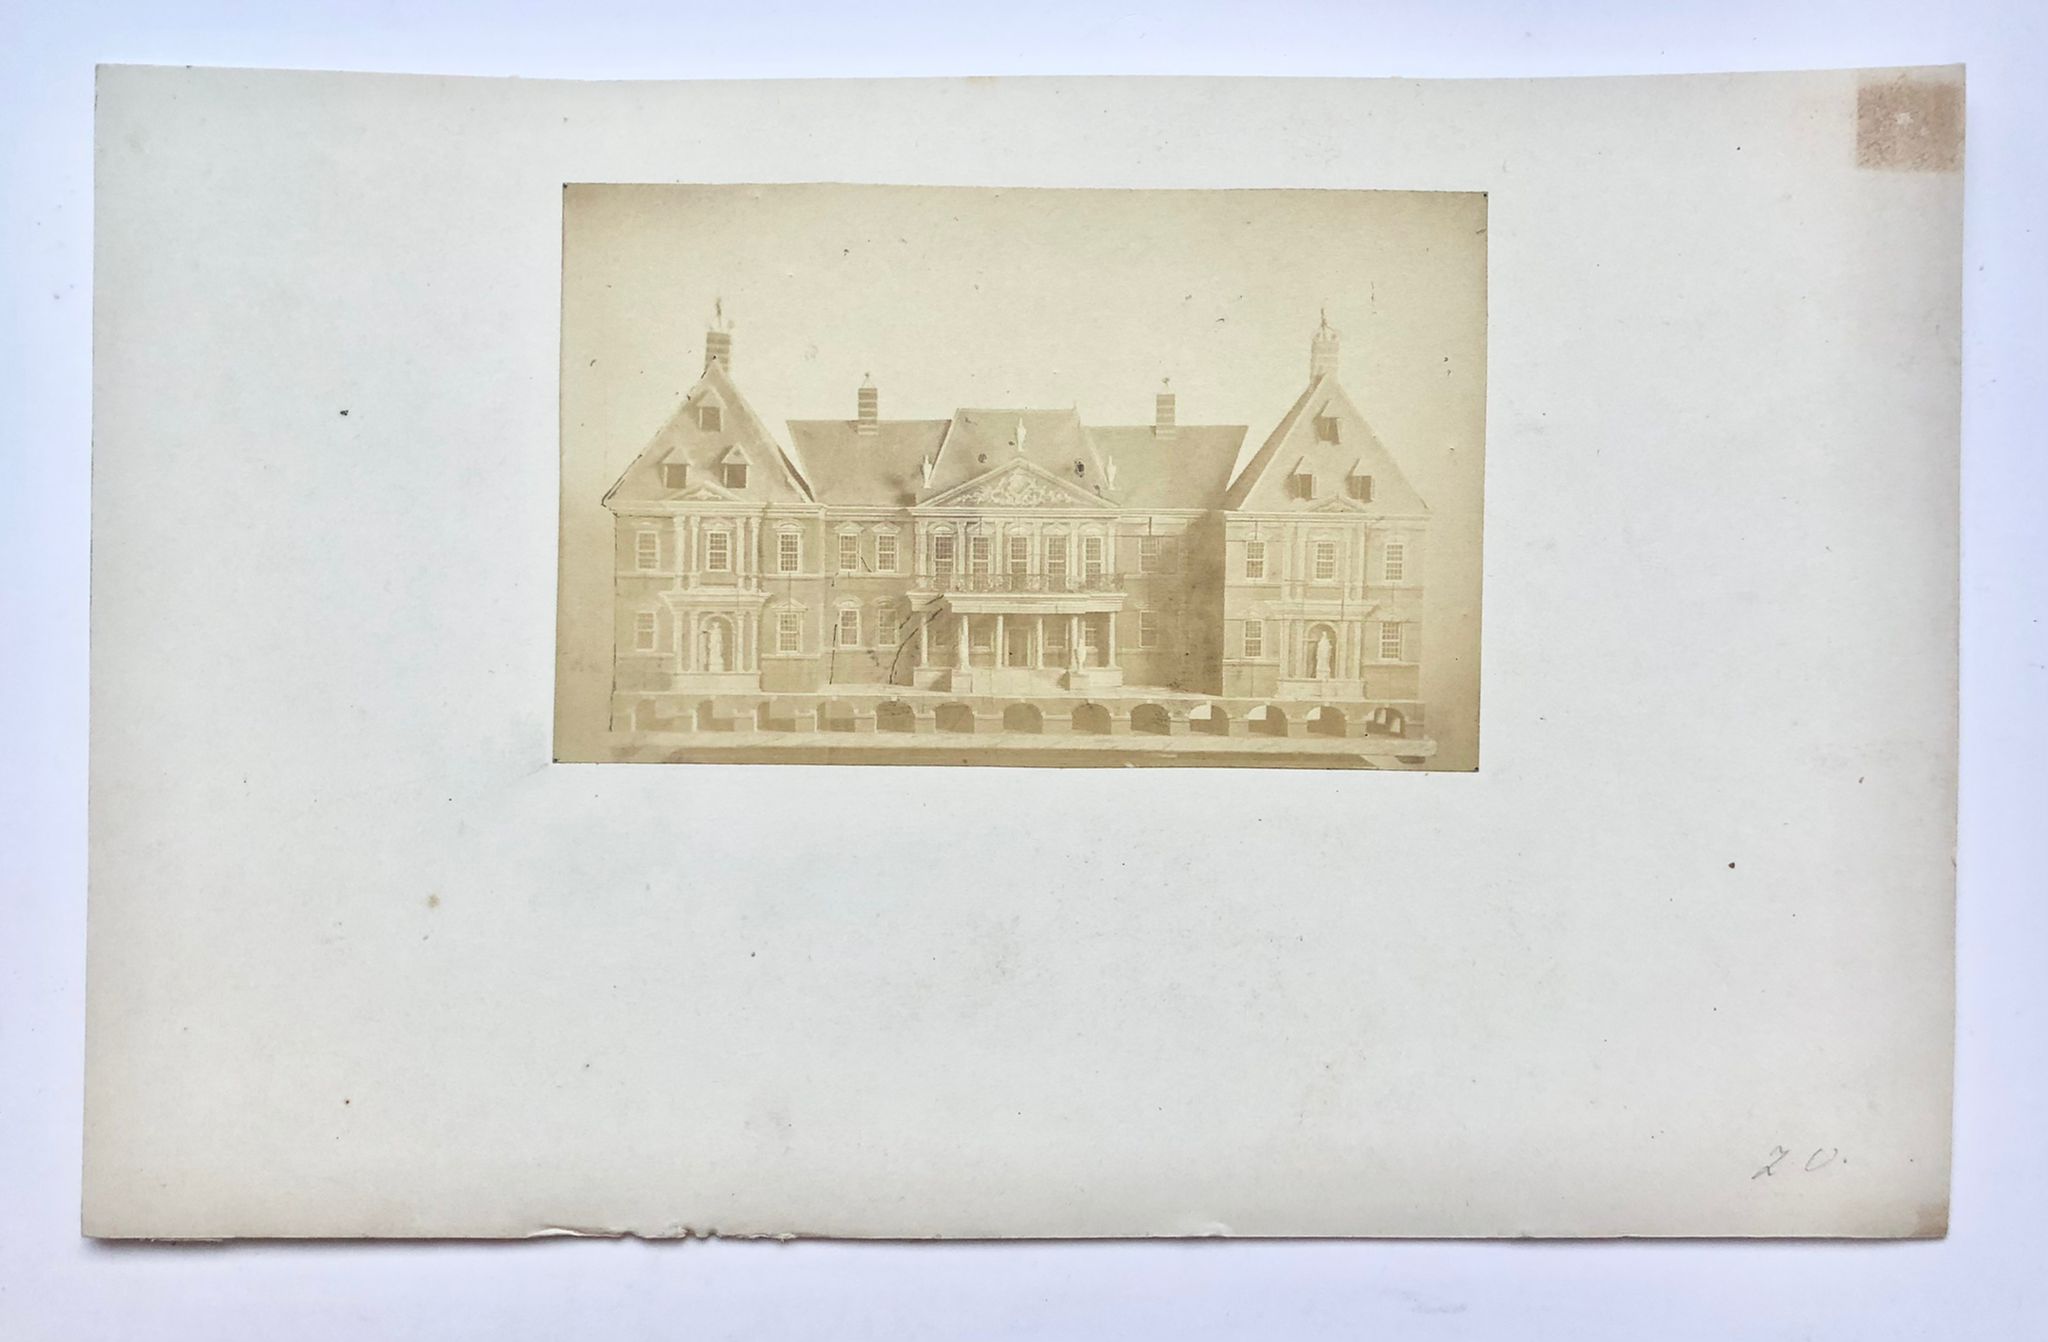 [Photography, reproduction ca 1900] Foto-reproductie (ca. 1900?) van gevel van Slot Honselaarsdijk, 8x13 cm.